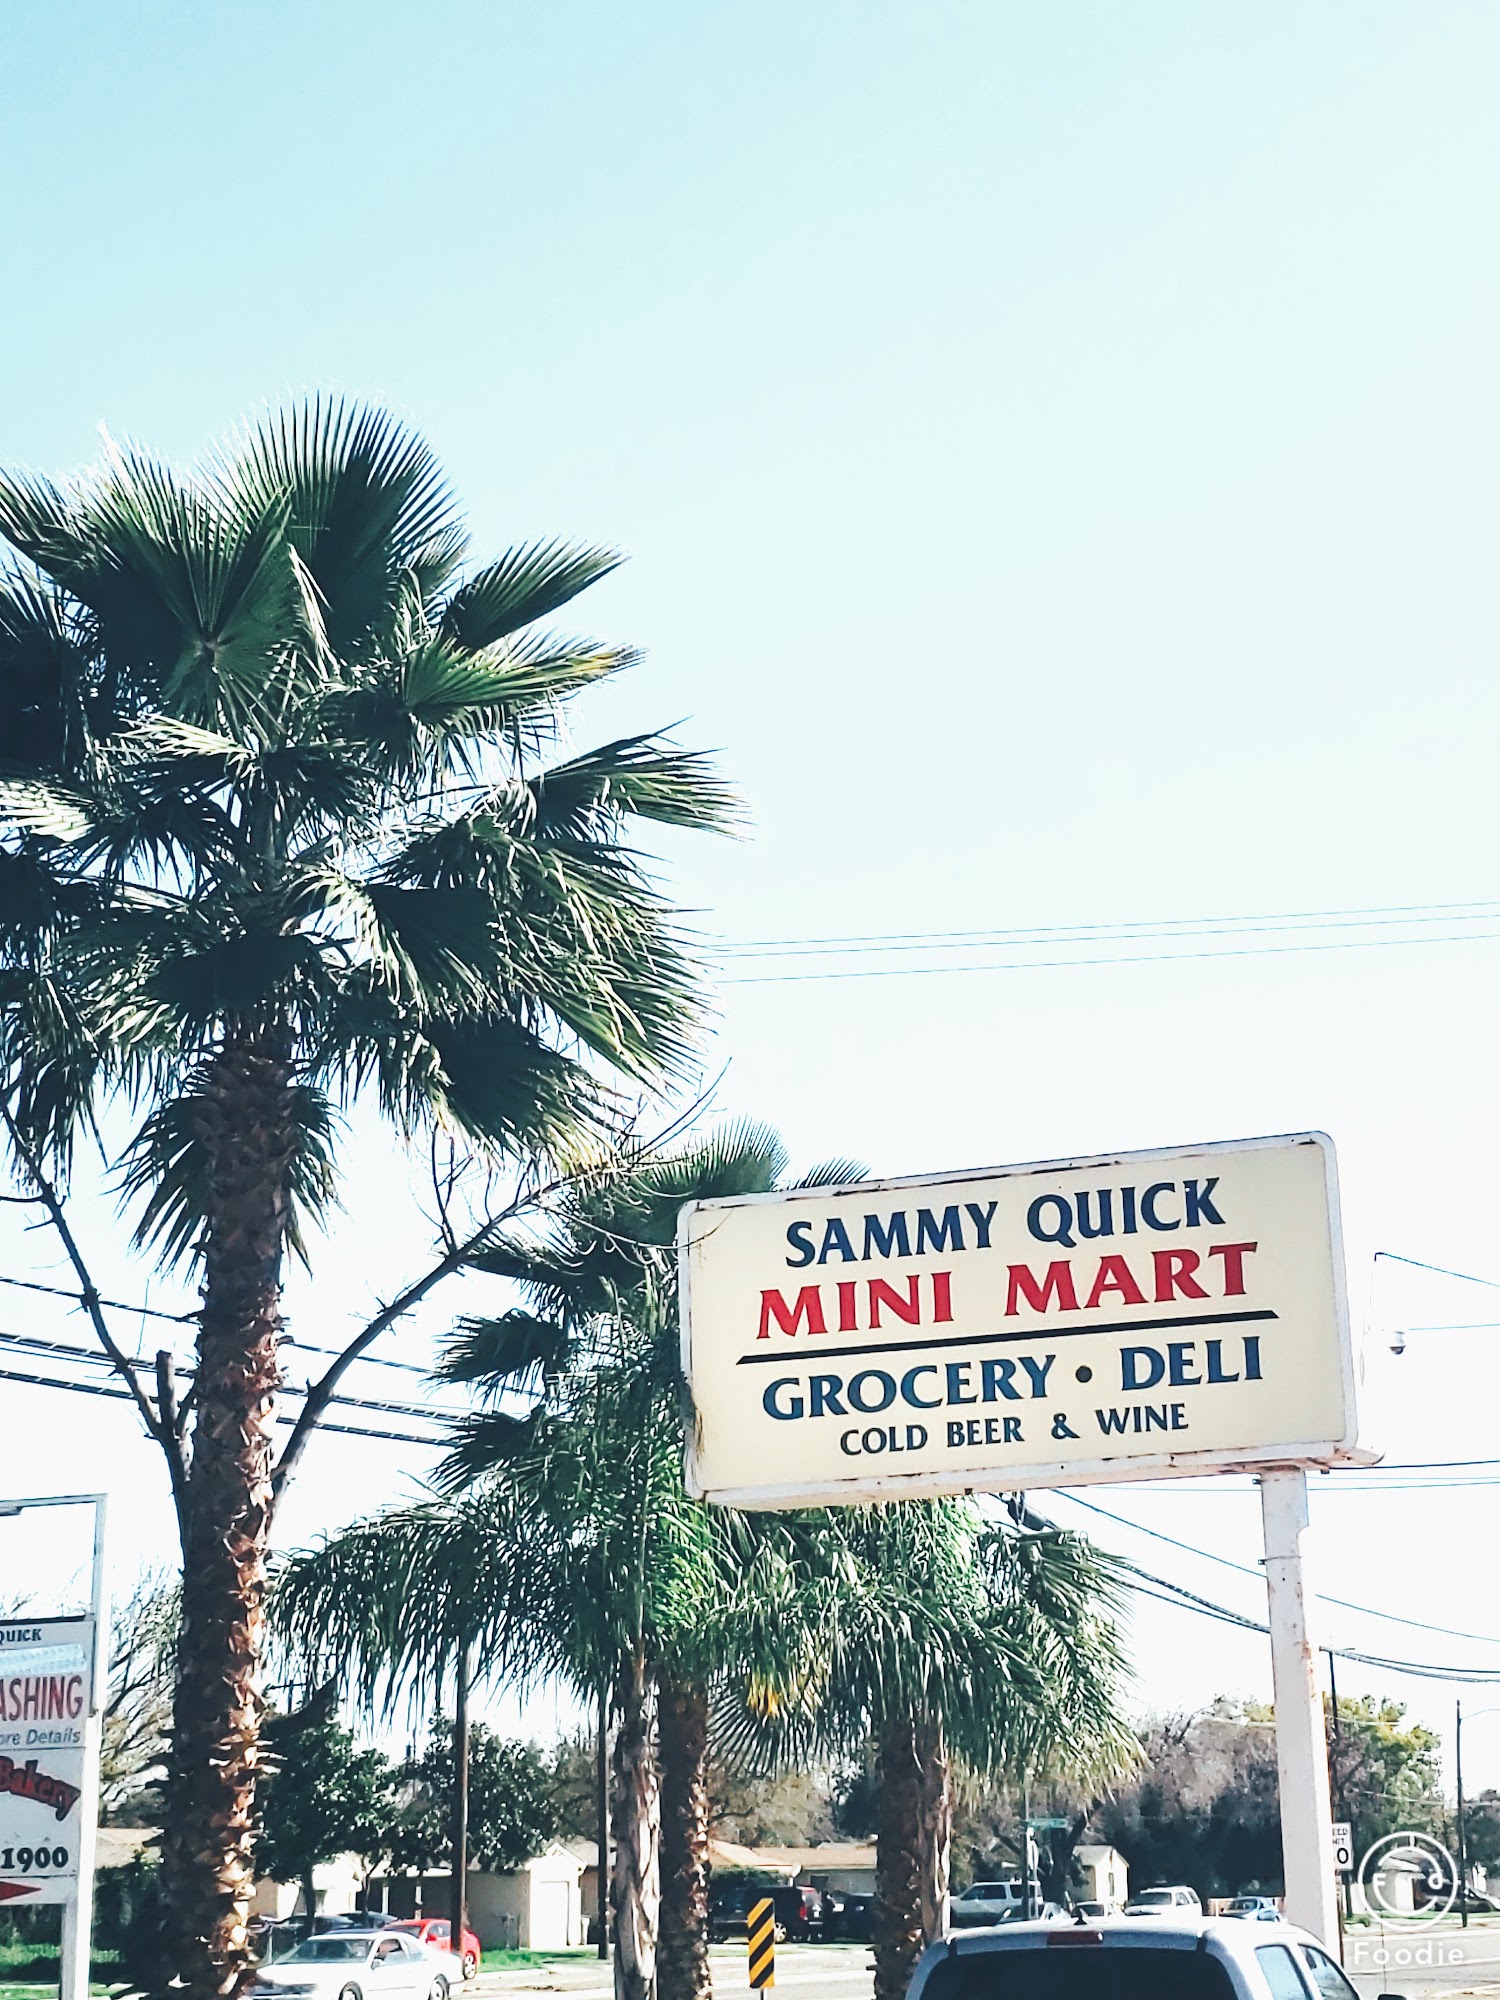 Sammy Quick Mini Mart